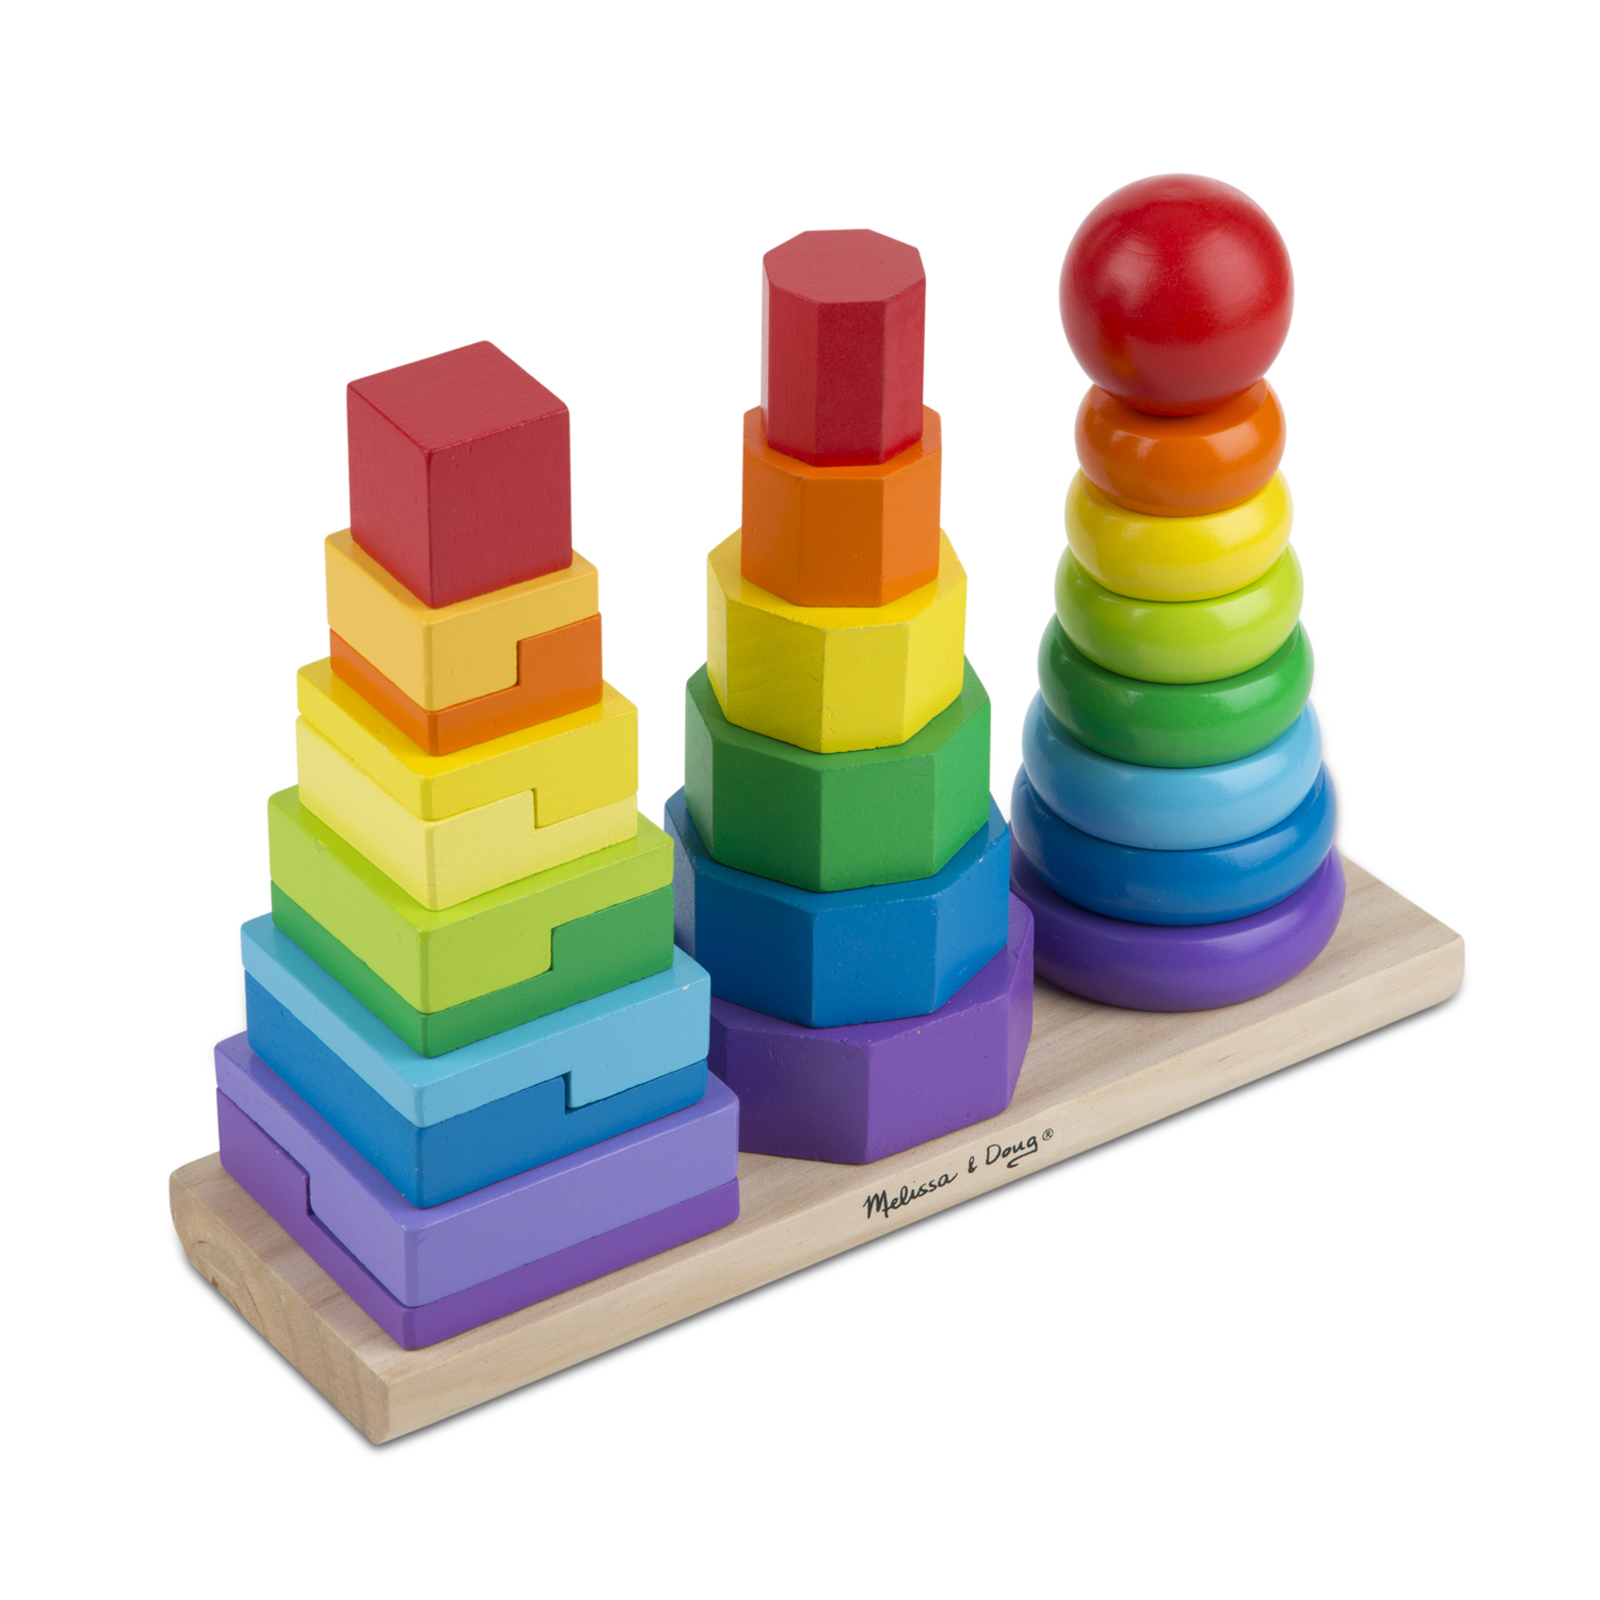 blocks, sorting & stacking toys image